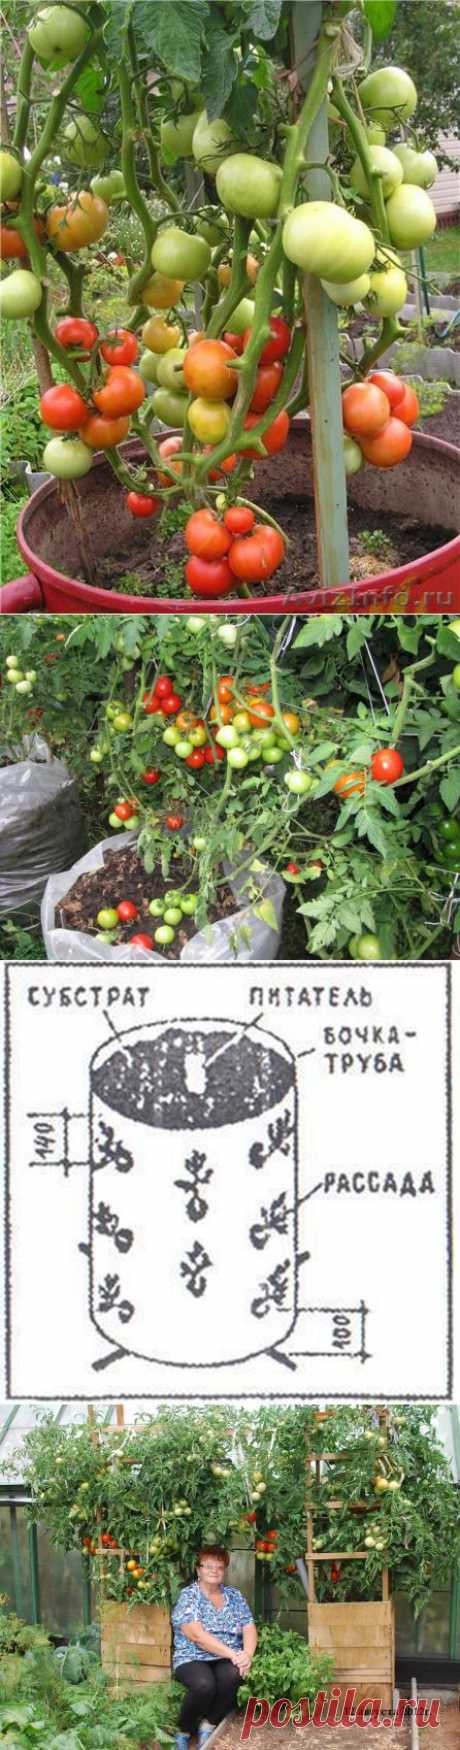 Как вырастить помидоры в бочке - Просто!))).